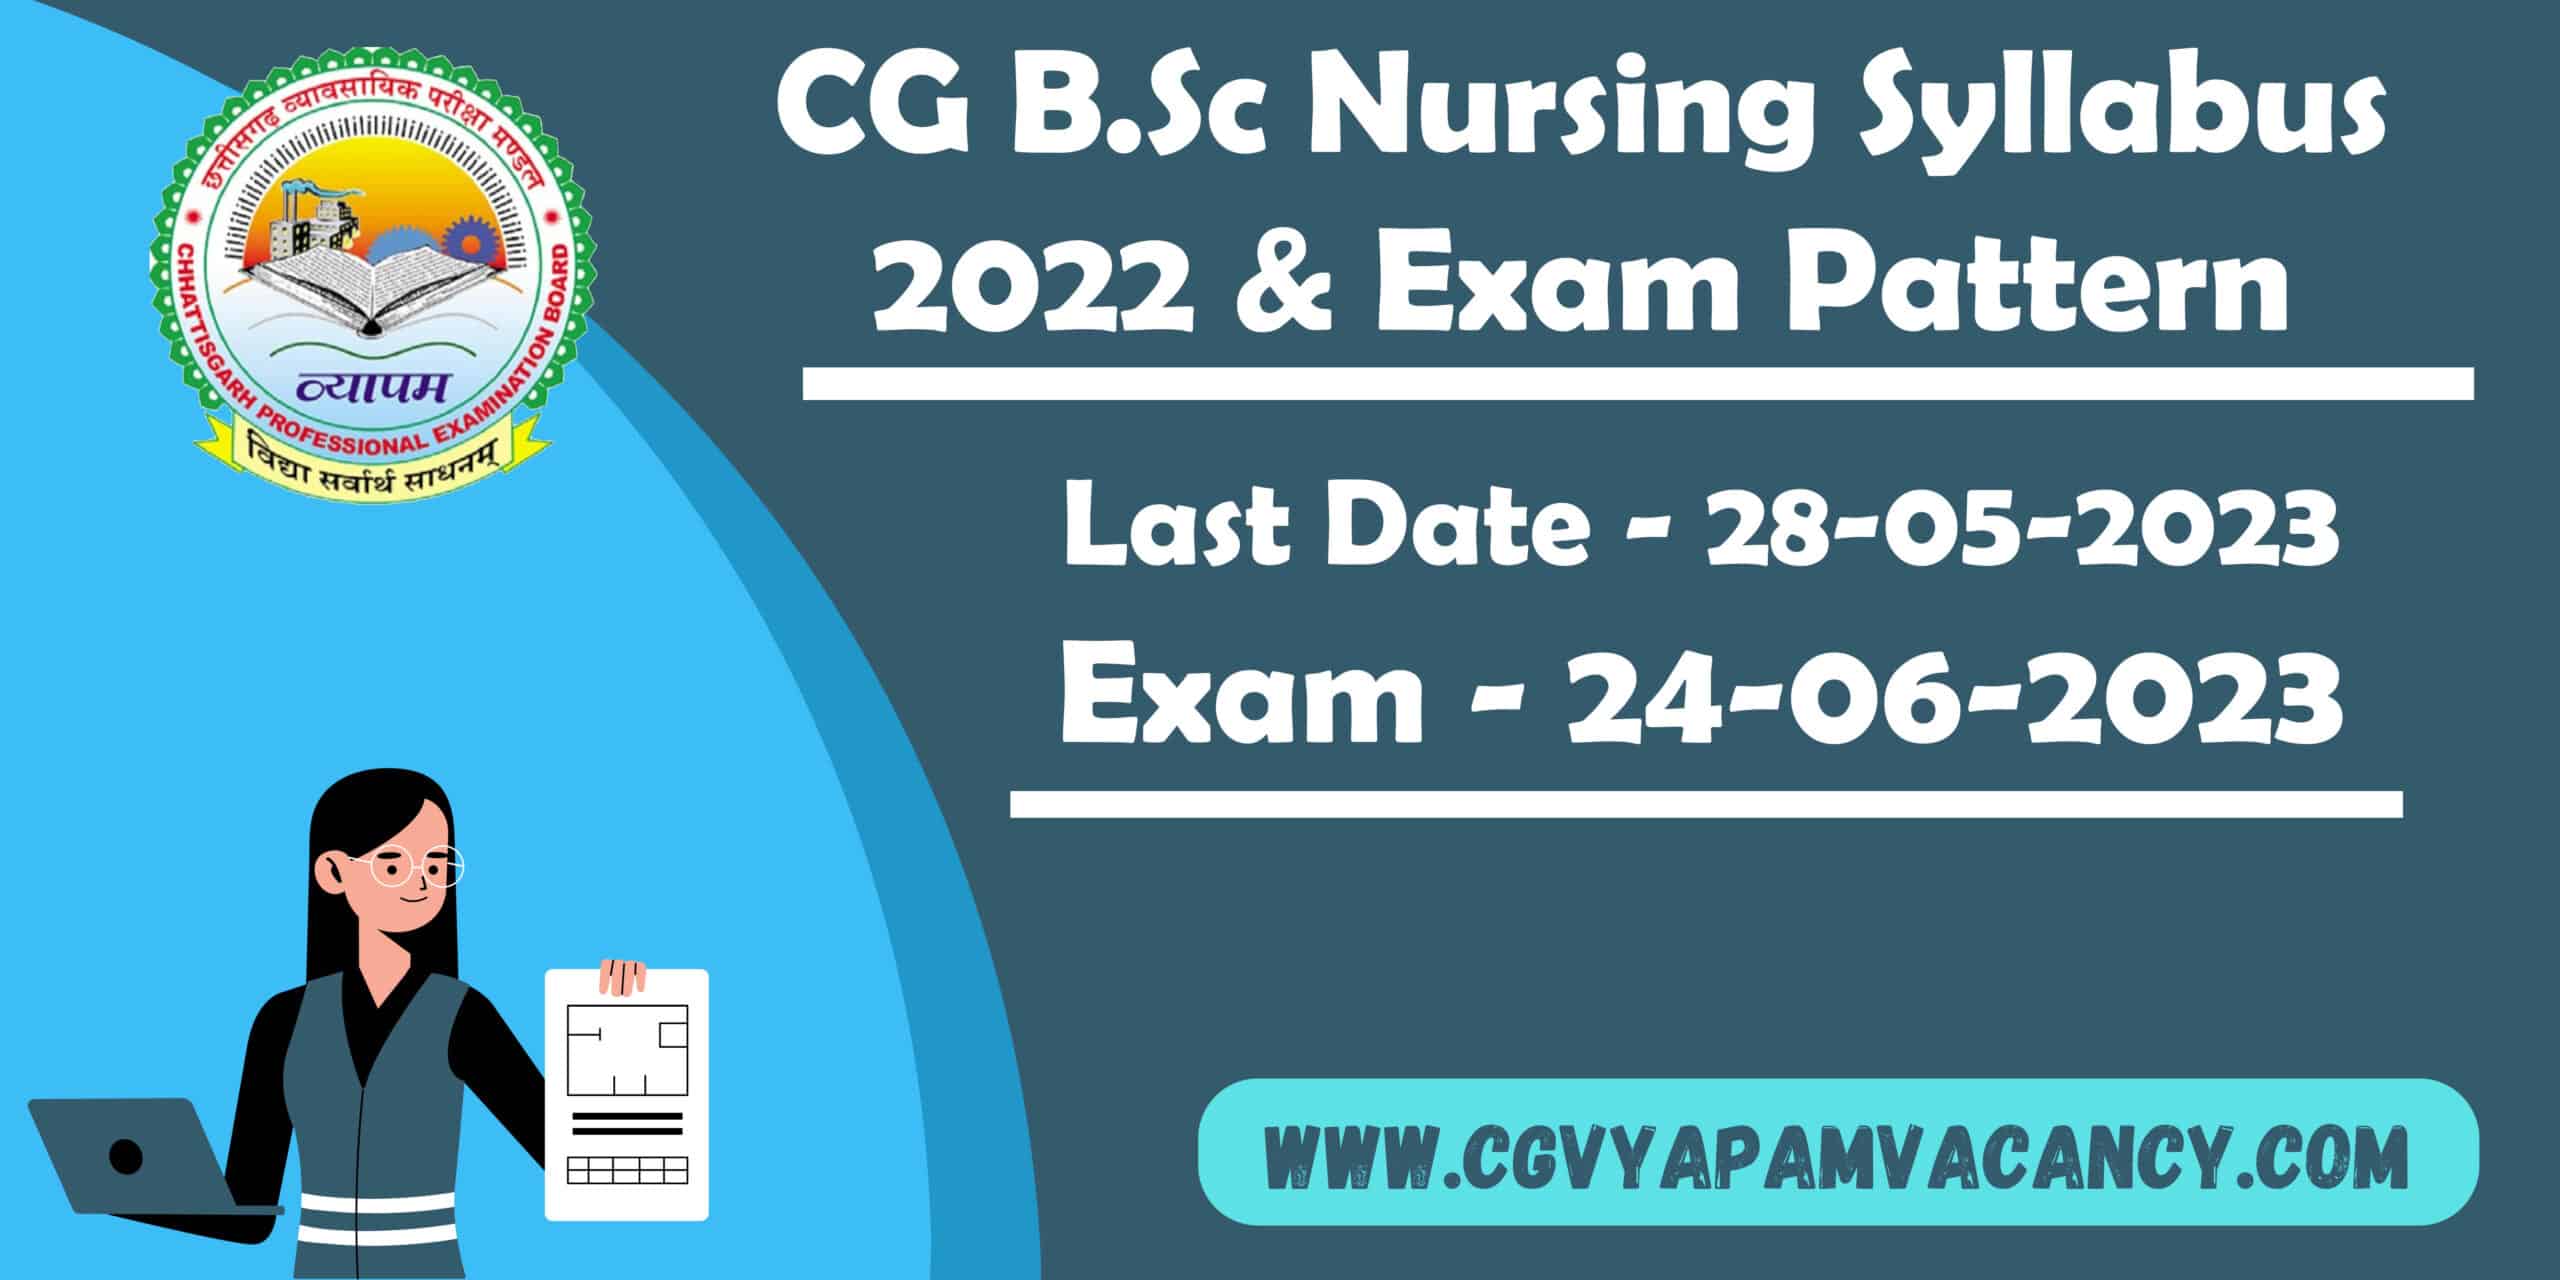 CG B.Sc Nursing Syllabus